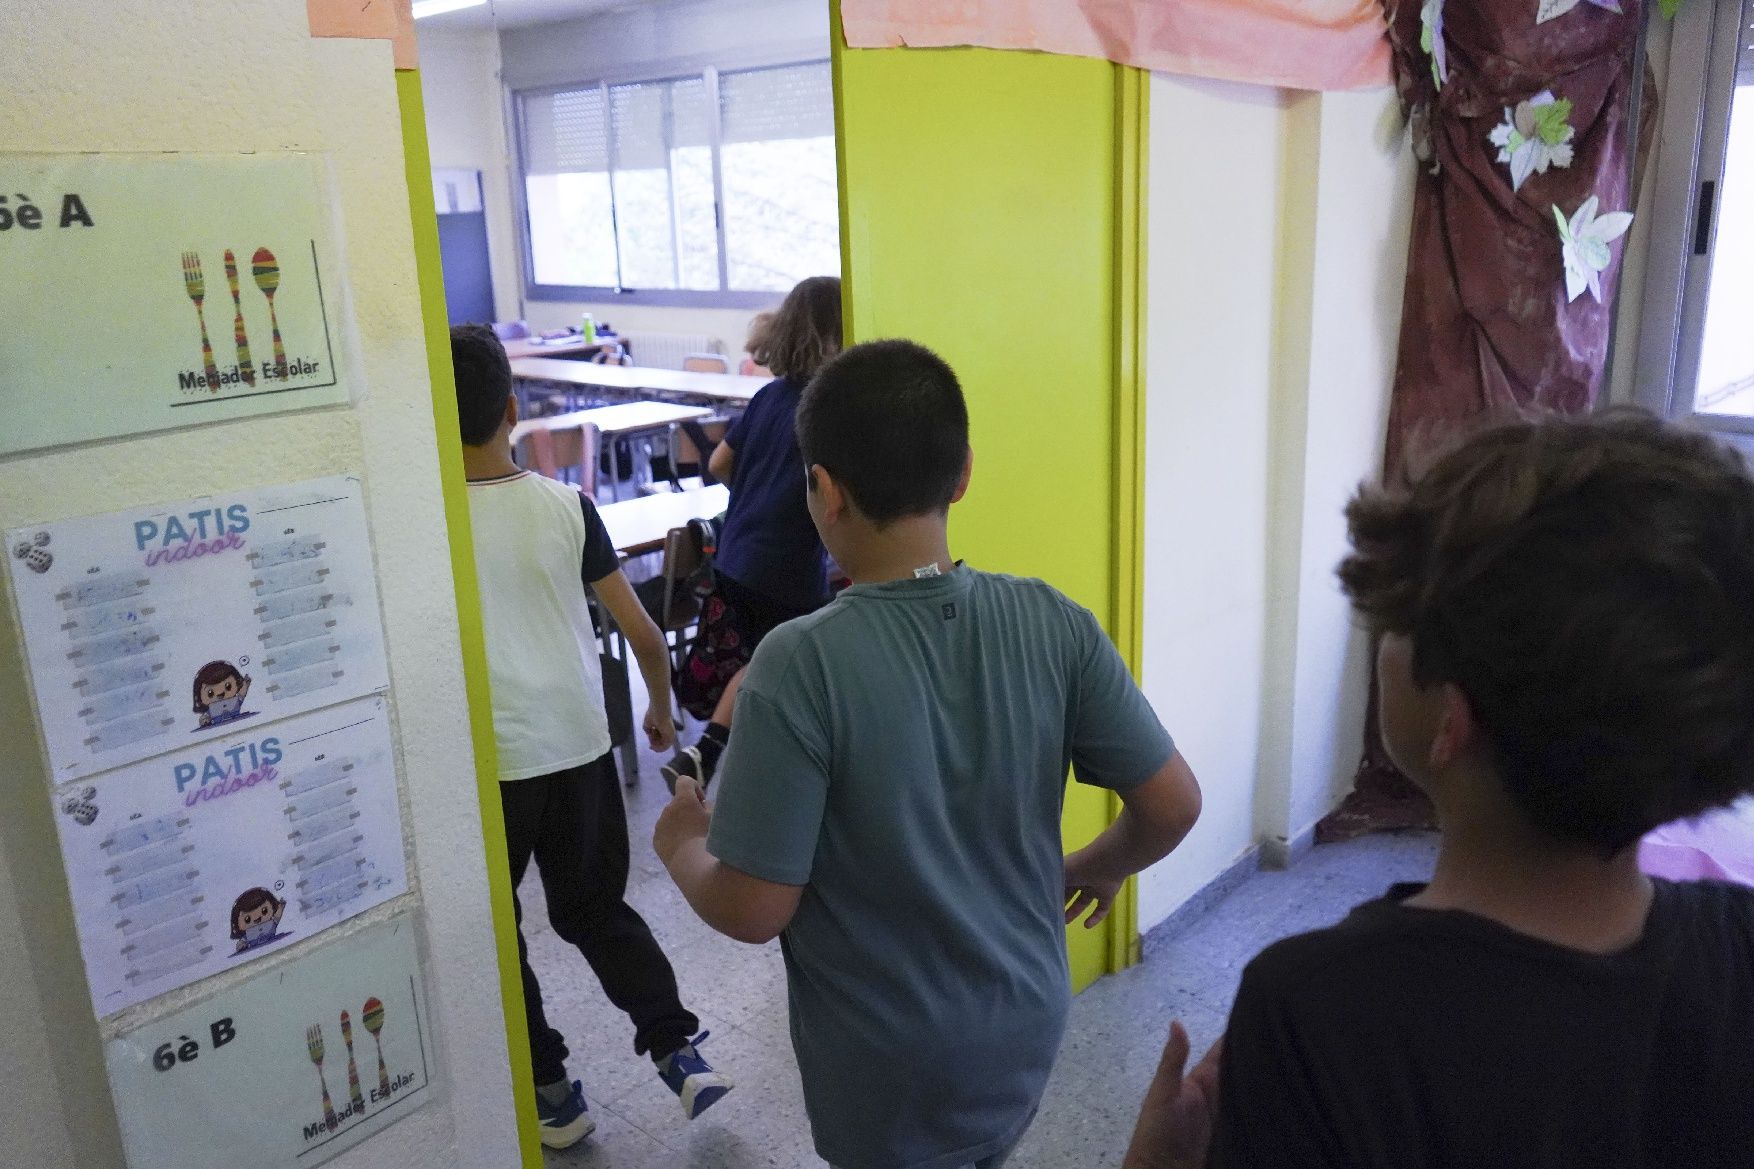 Prova de sirenes per risc químic de Protecció Civil a l'Escola Sant Vicenç de Castellet